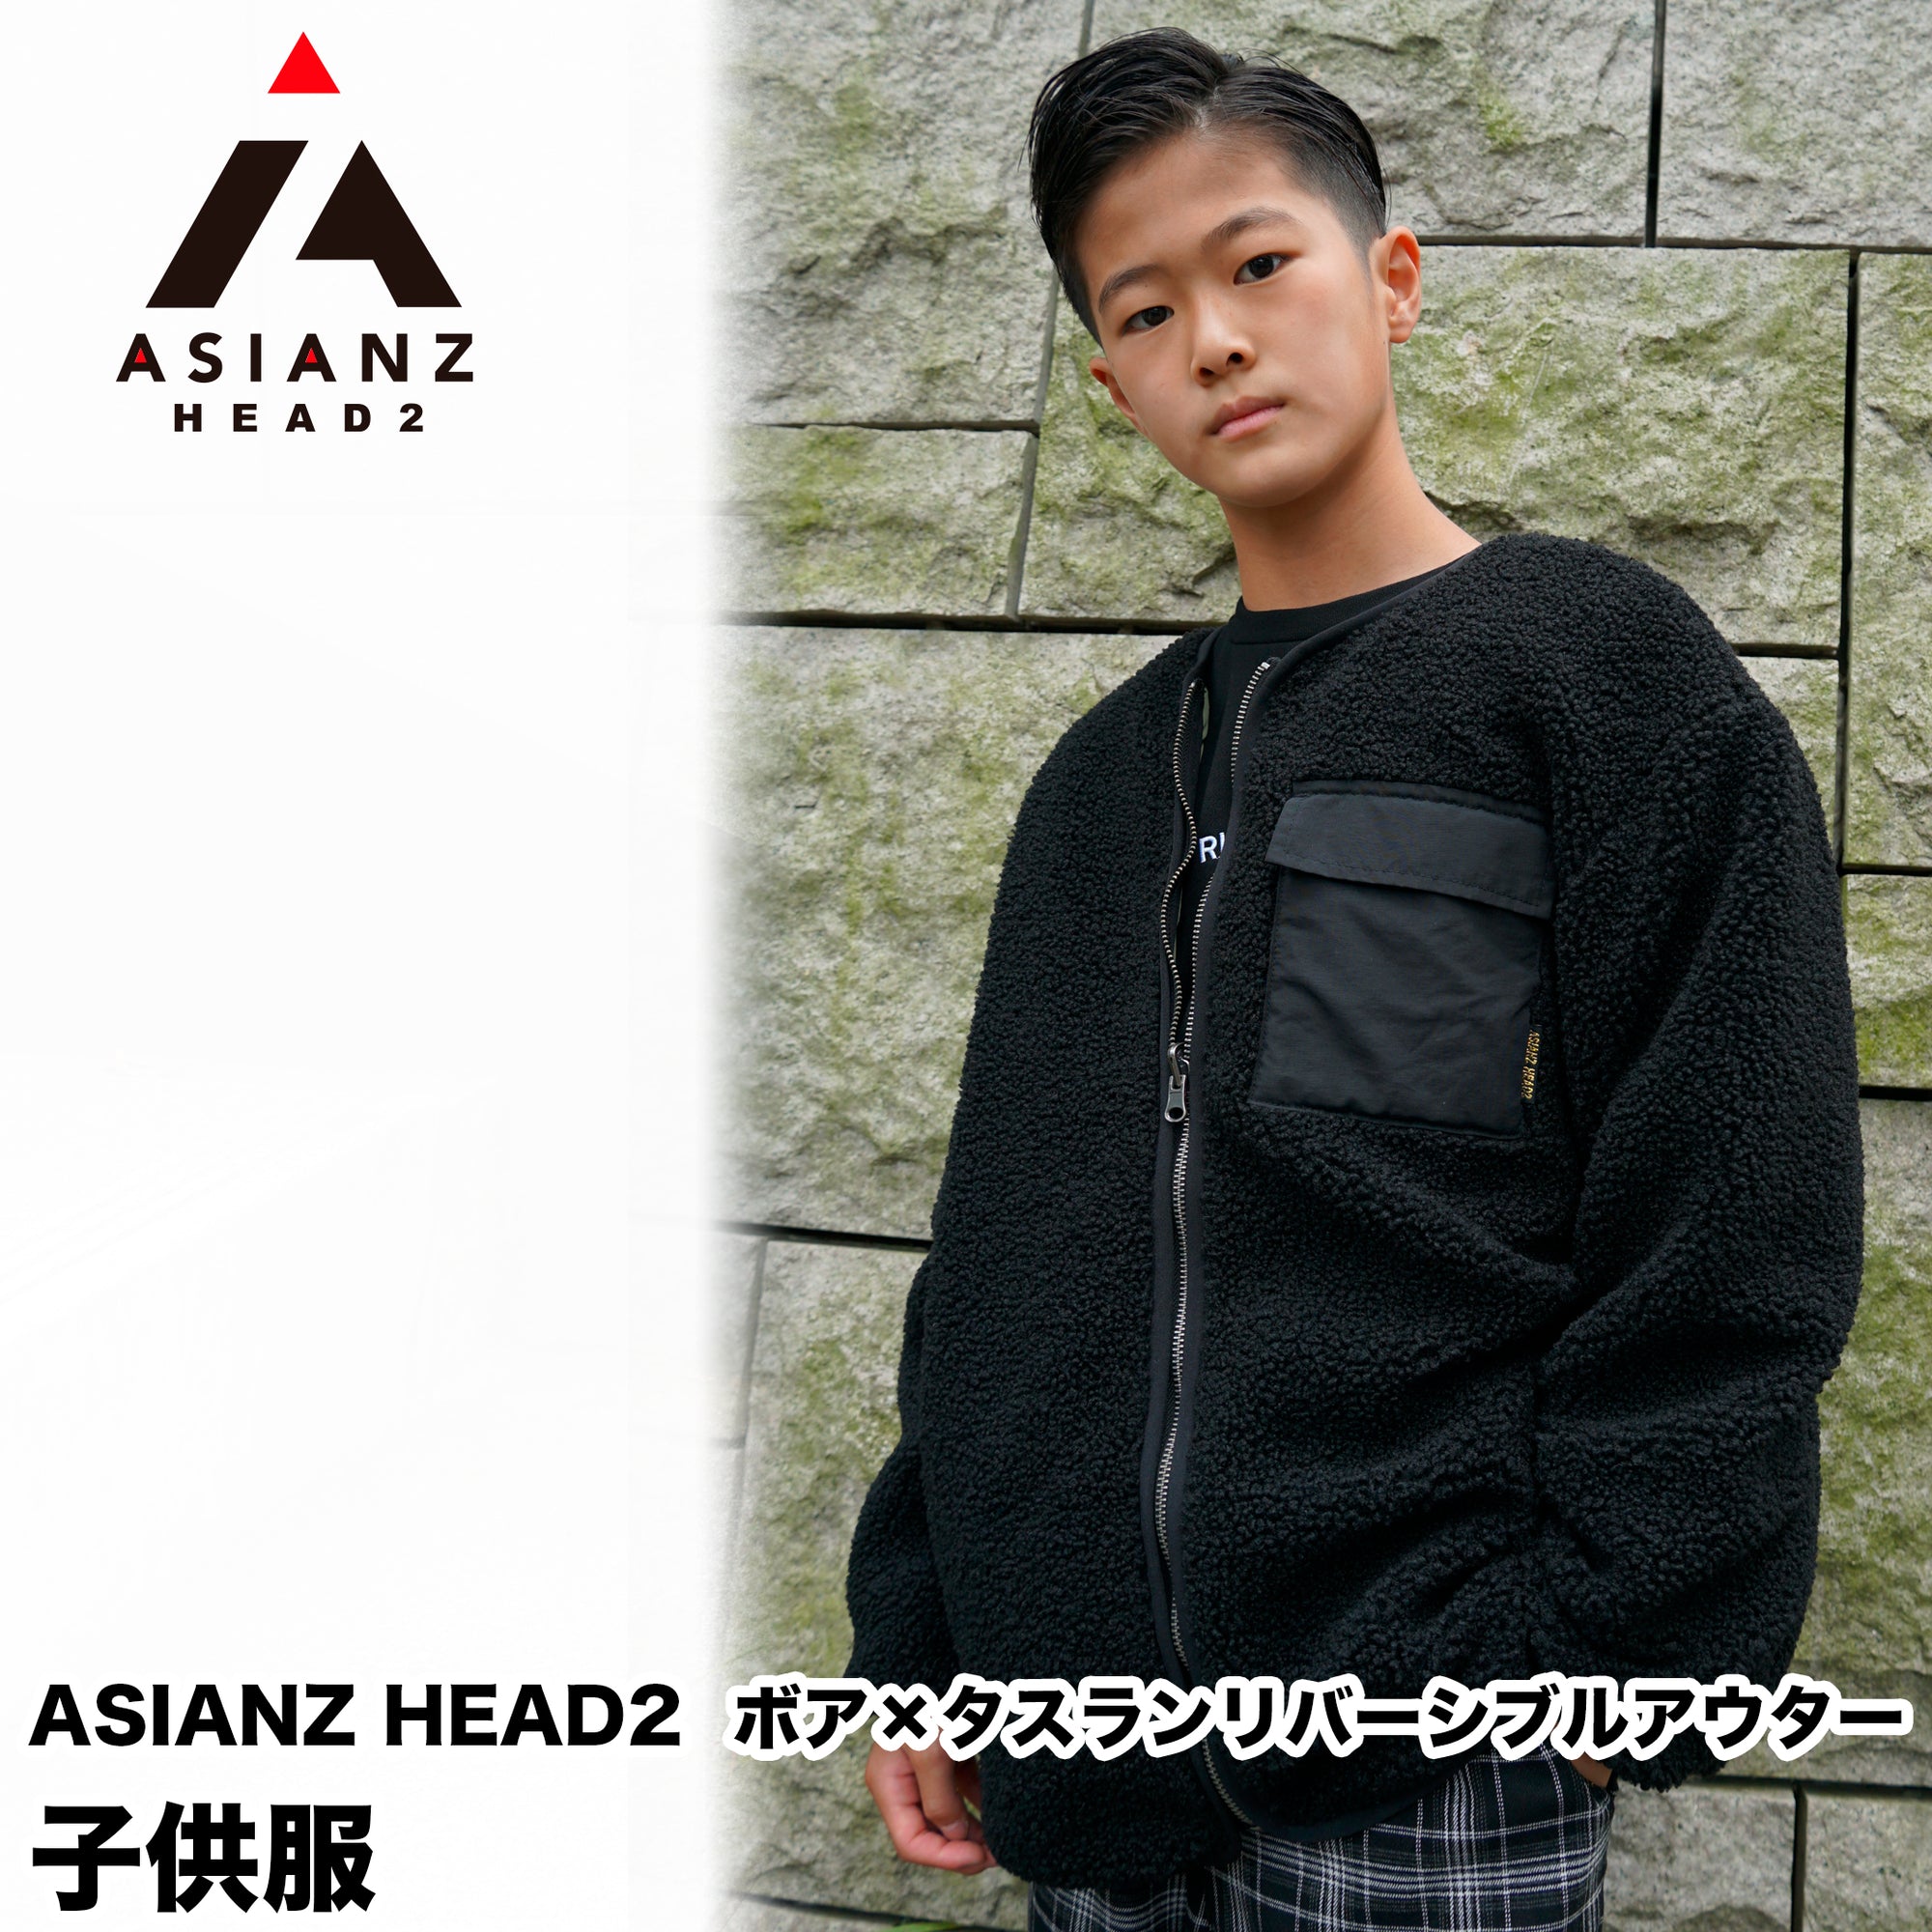 (40%オフ! セール商品)ASIANZ HEAD2 ボア×タスランリバーシブルアウター キッズウェアー